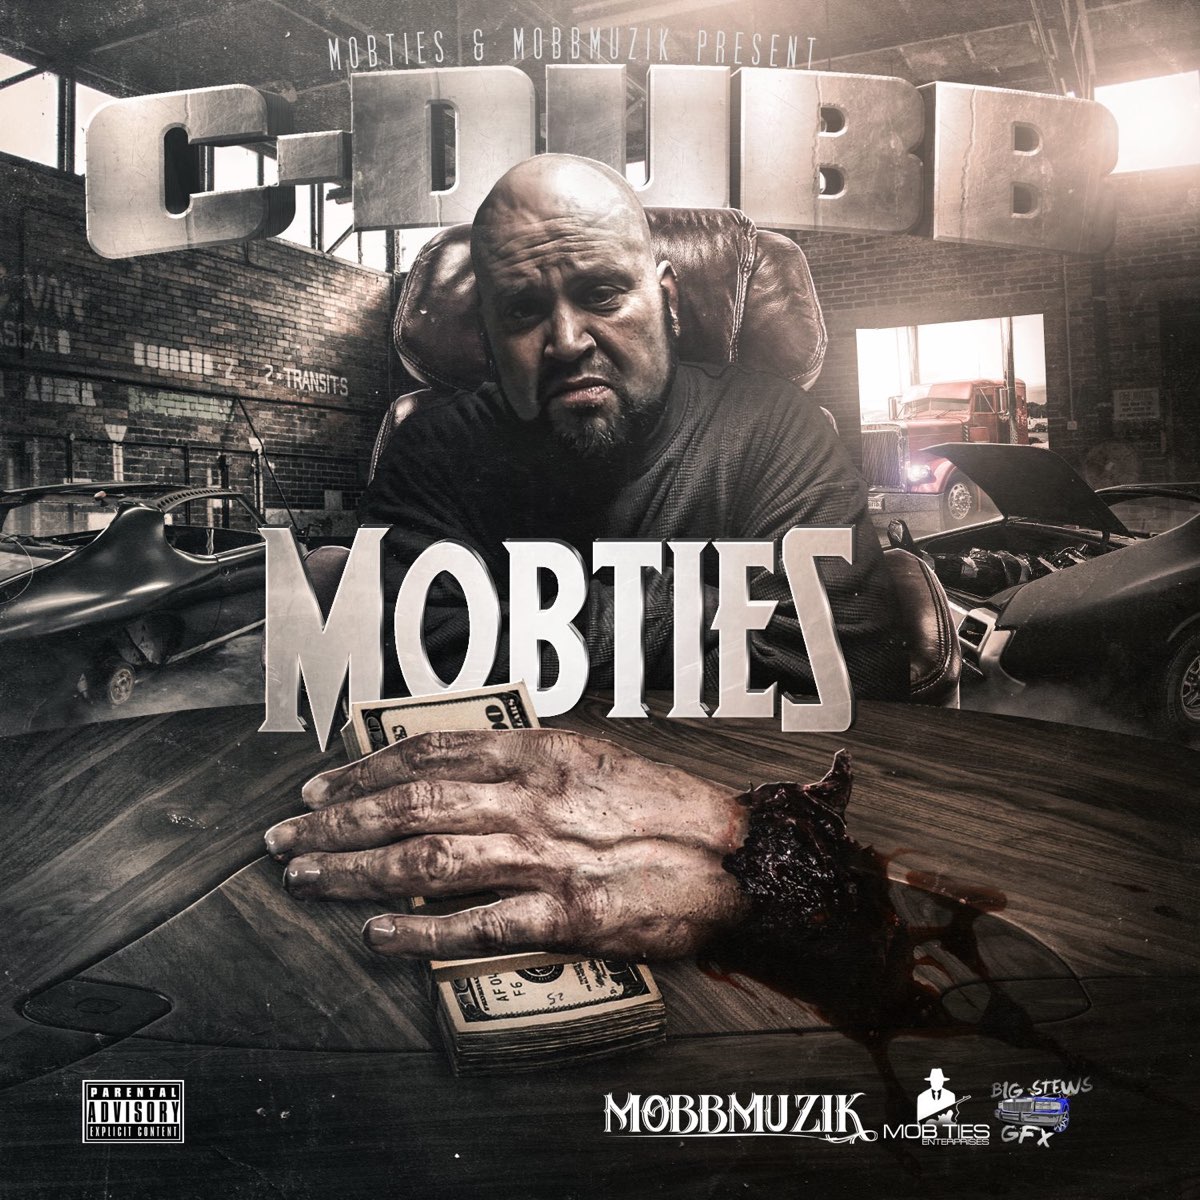 C-Dubb - Mobties & Mobb Muzik Present Mobties